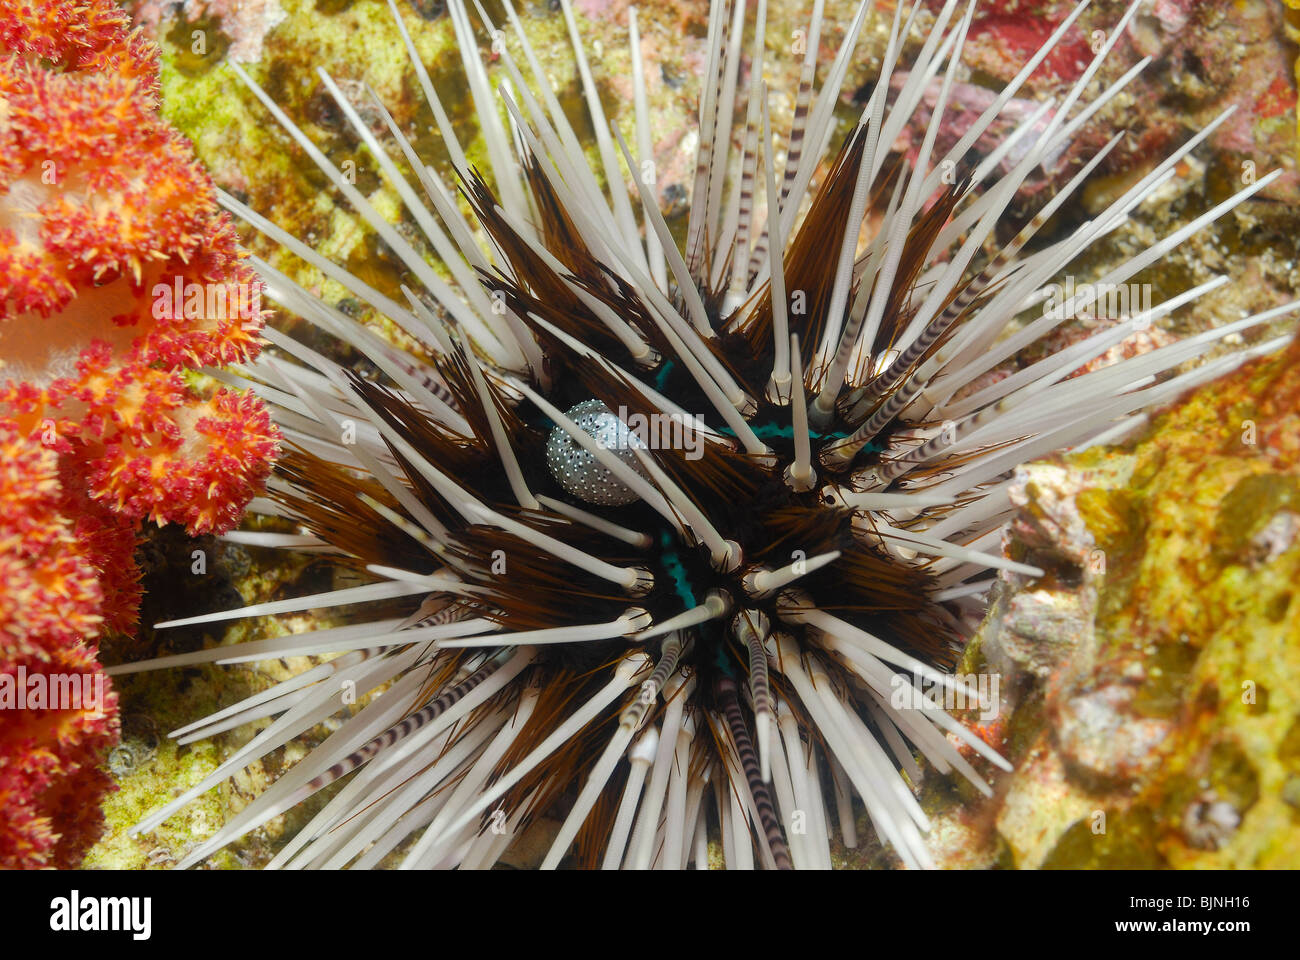 Sea urchin in the Similan Islands, Andaman Sea Stock Photo